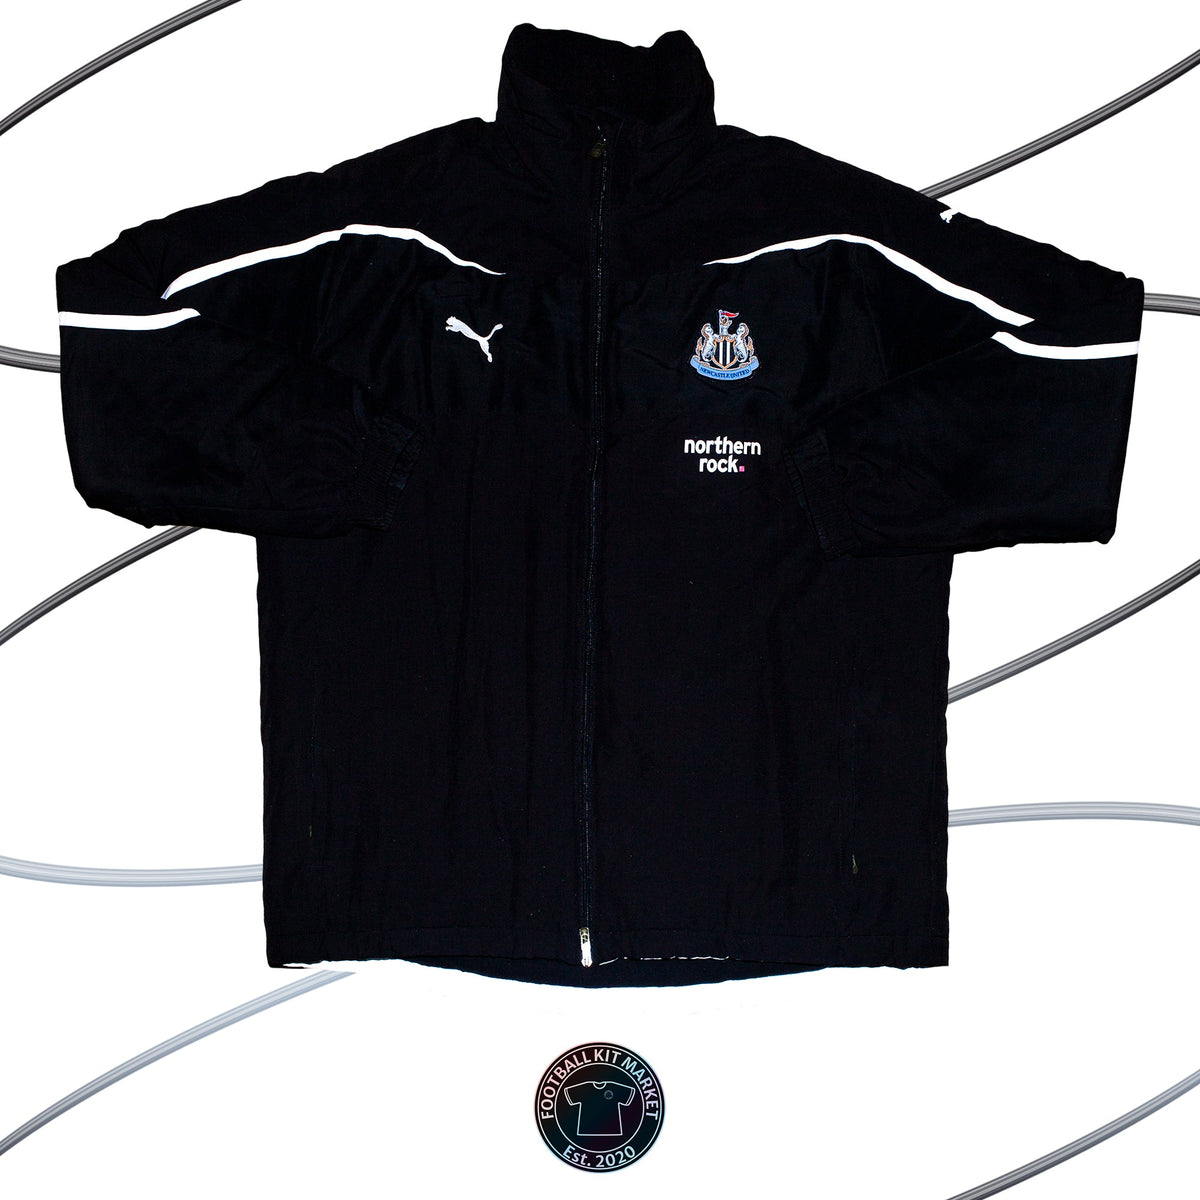 Genuine NEWCASTLE UNITED Jacket - PUMA (XL) - Product Image from Football Kit Market